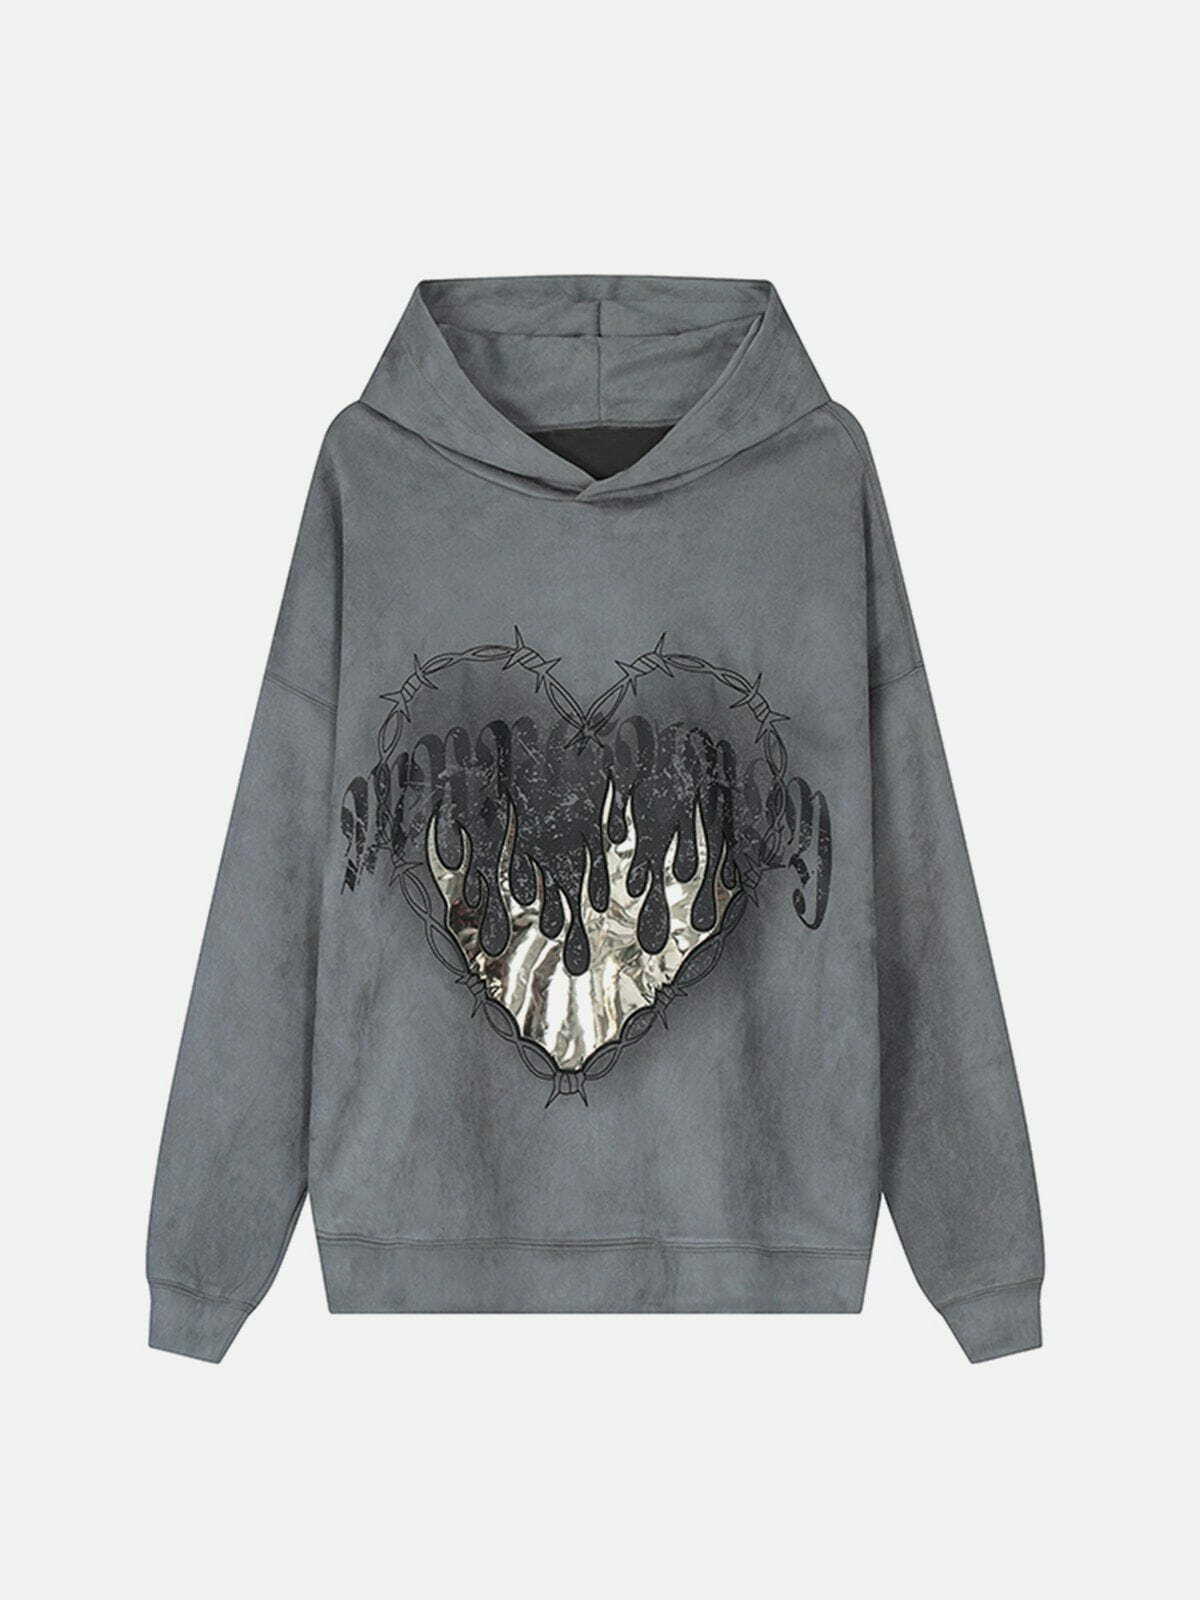 flame suede hoodie edgy & vibrant streetwear 8447